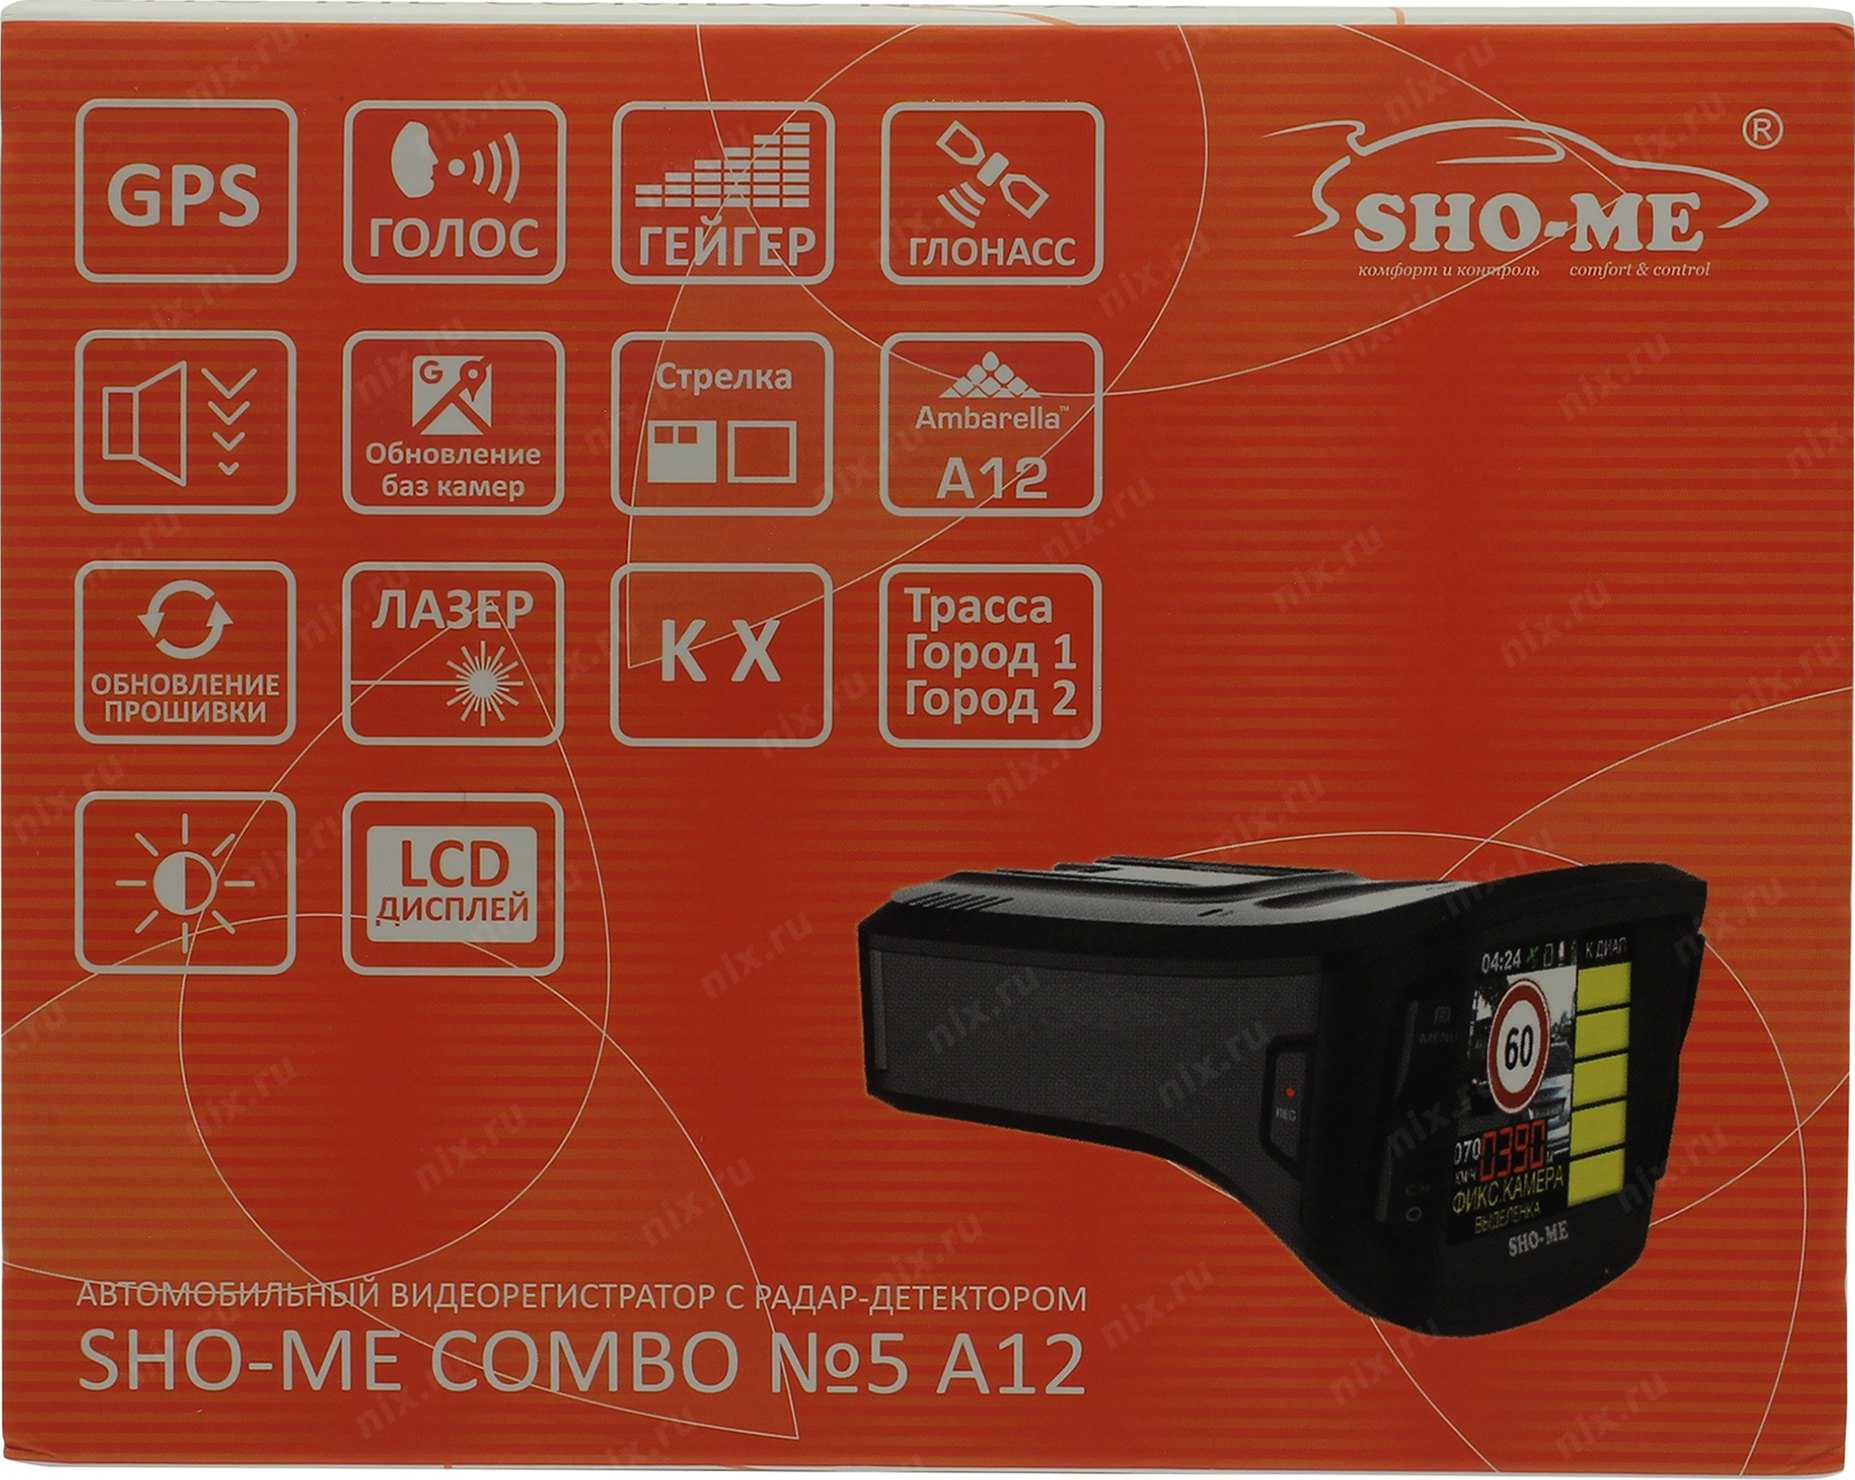 Отзывы sho-me combo №5 а12 | видеорегистраторы sho-me | подробные характеристики, видео обзоры, отзывы покупателей